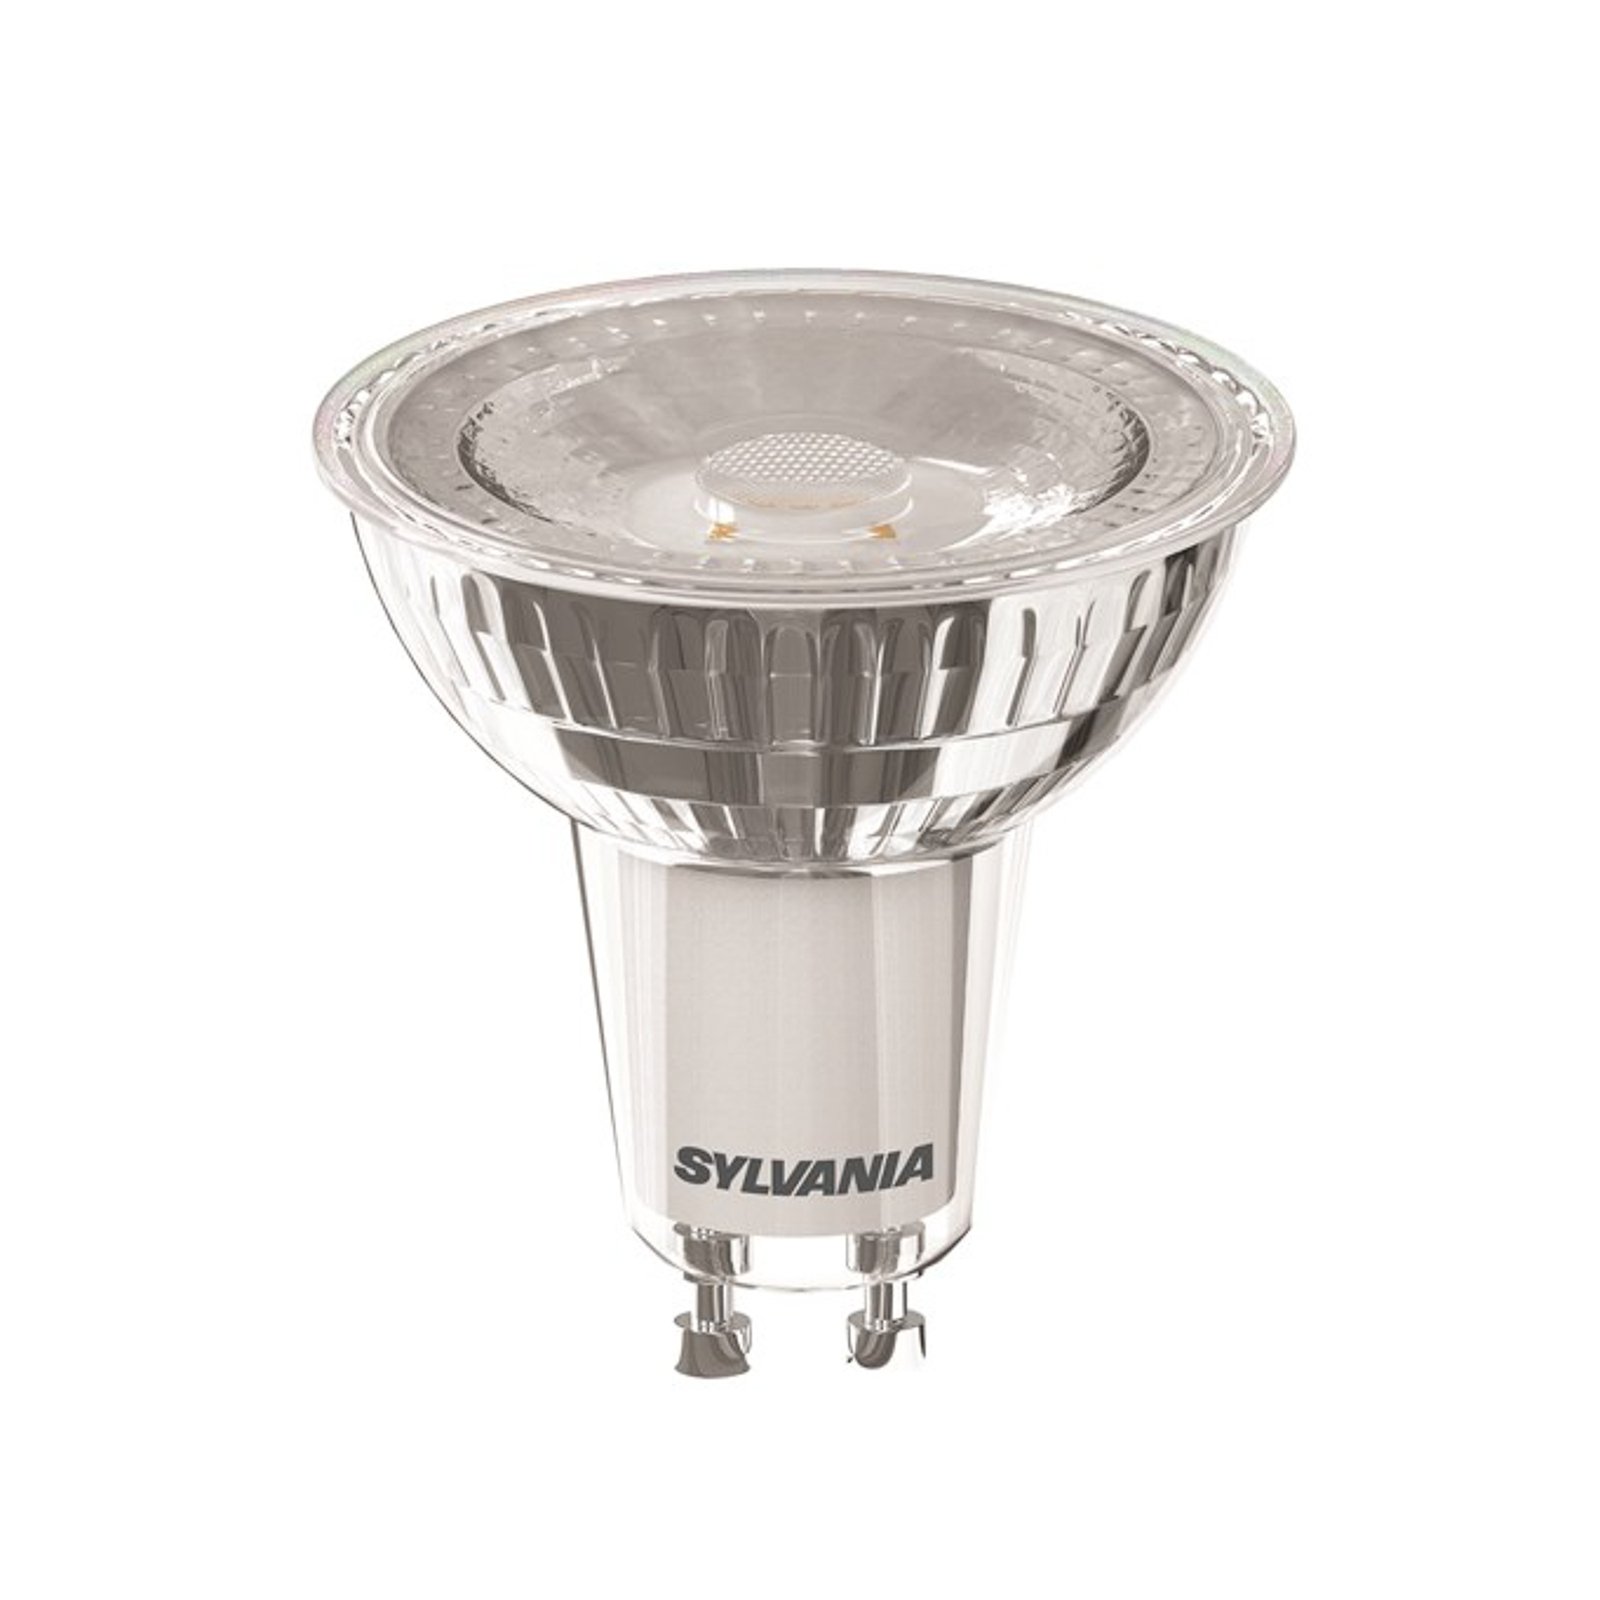 Sylvania reflector LED GU10 Superia 6W 36° 865 dim